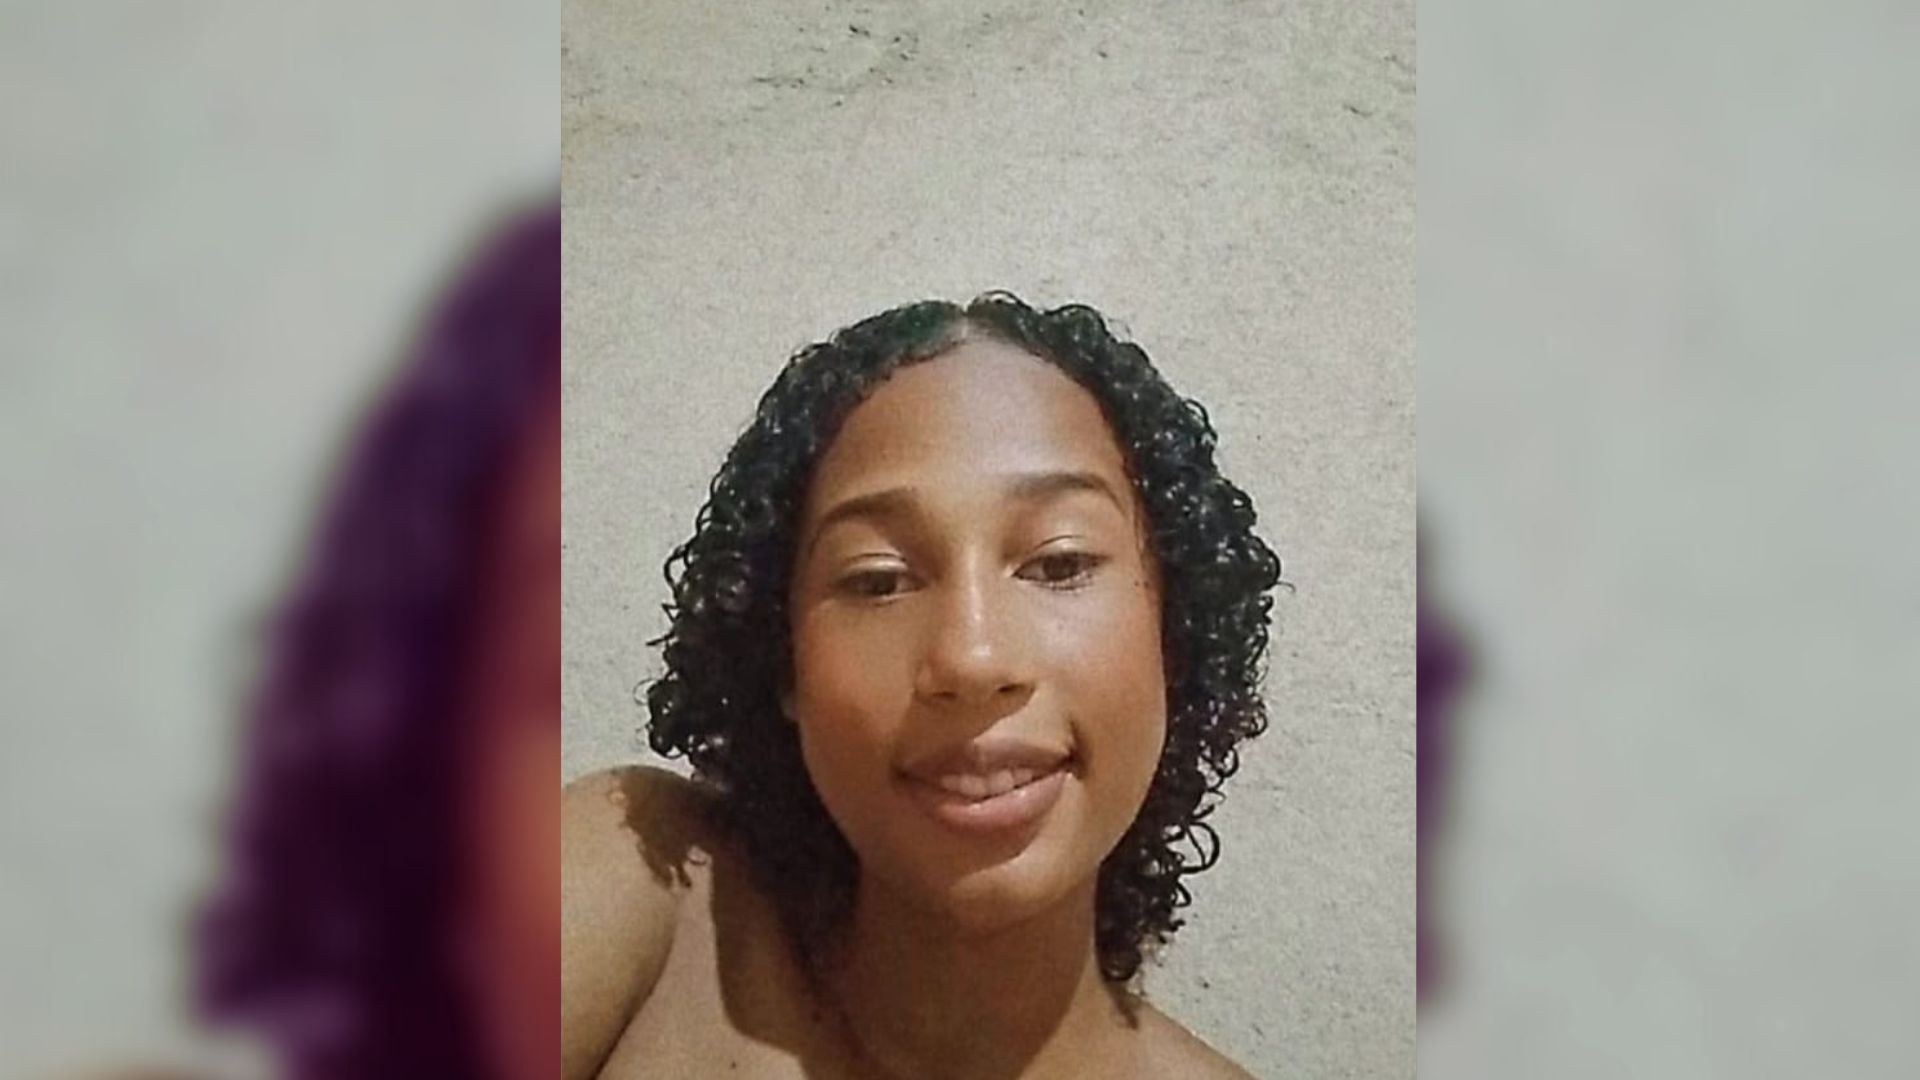 Samanta Teixeira de Oliveira Teodoro, de 14 anos, está desaparecida desde o dia 22 de março, quando deixou o Assentamento Maria Olinda I, para ir ao distrito de São João do Sobrado